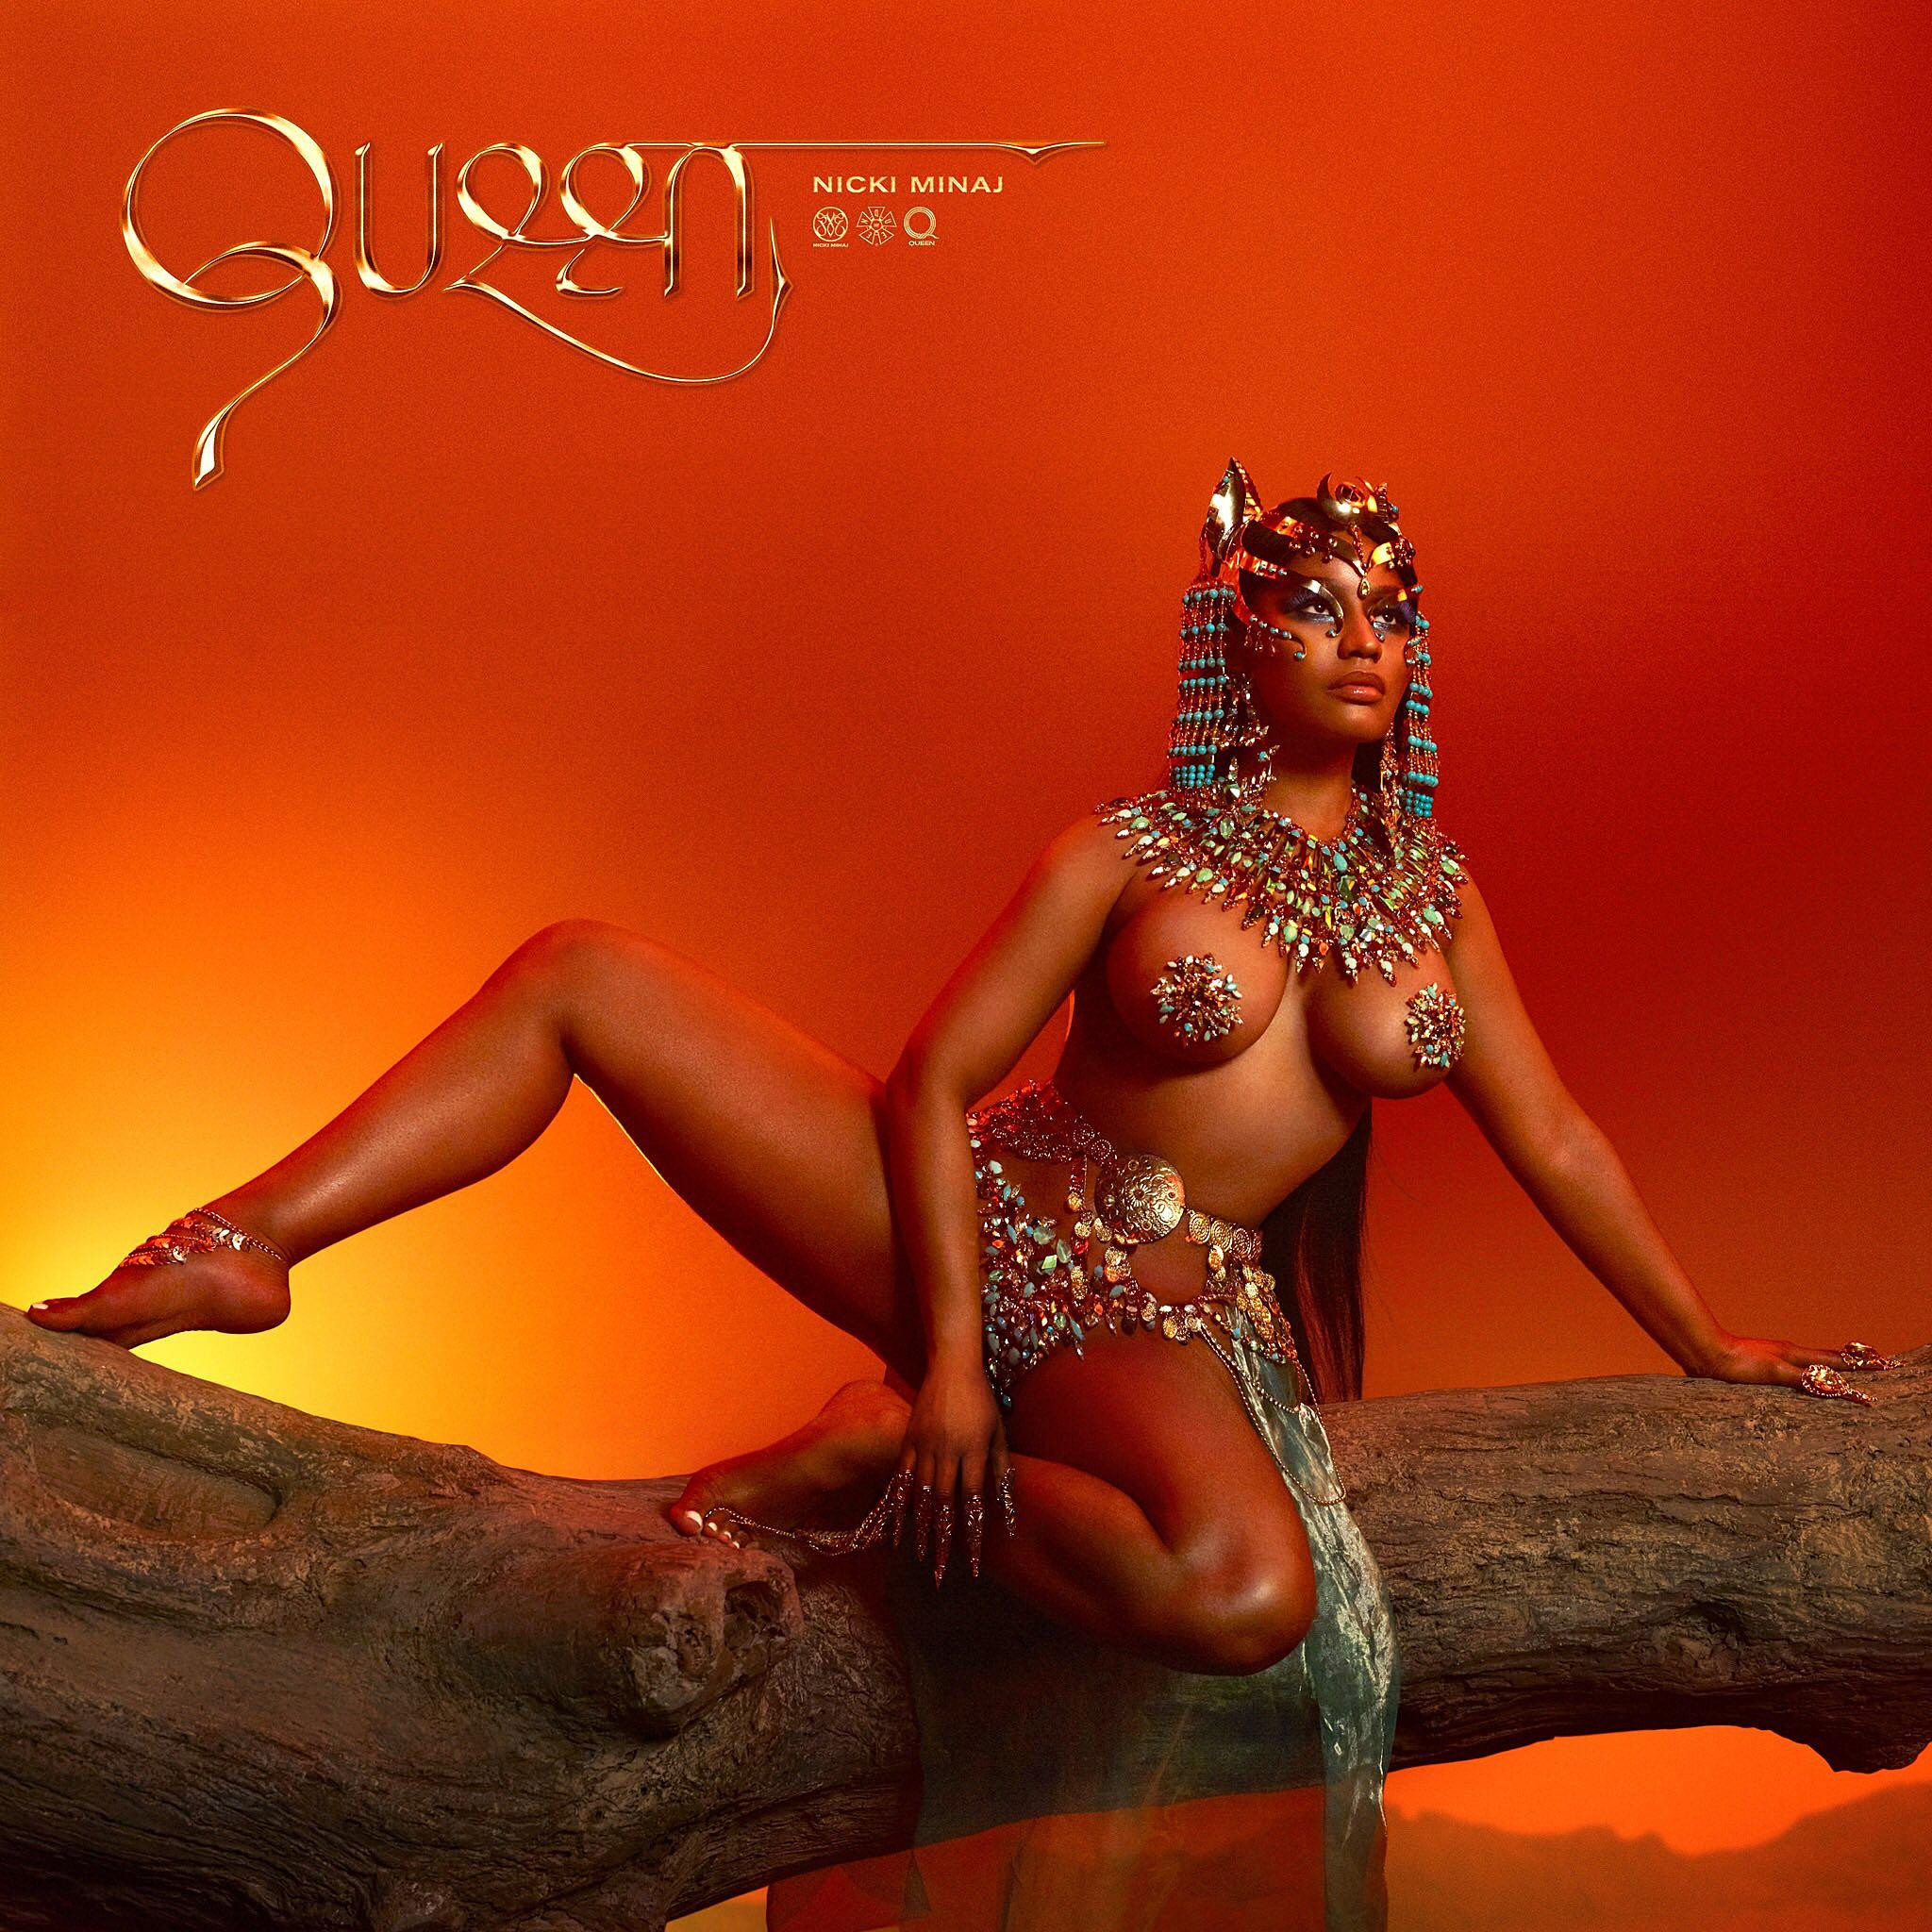 Stream Nicki Minaj’s “Queen” Album